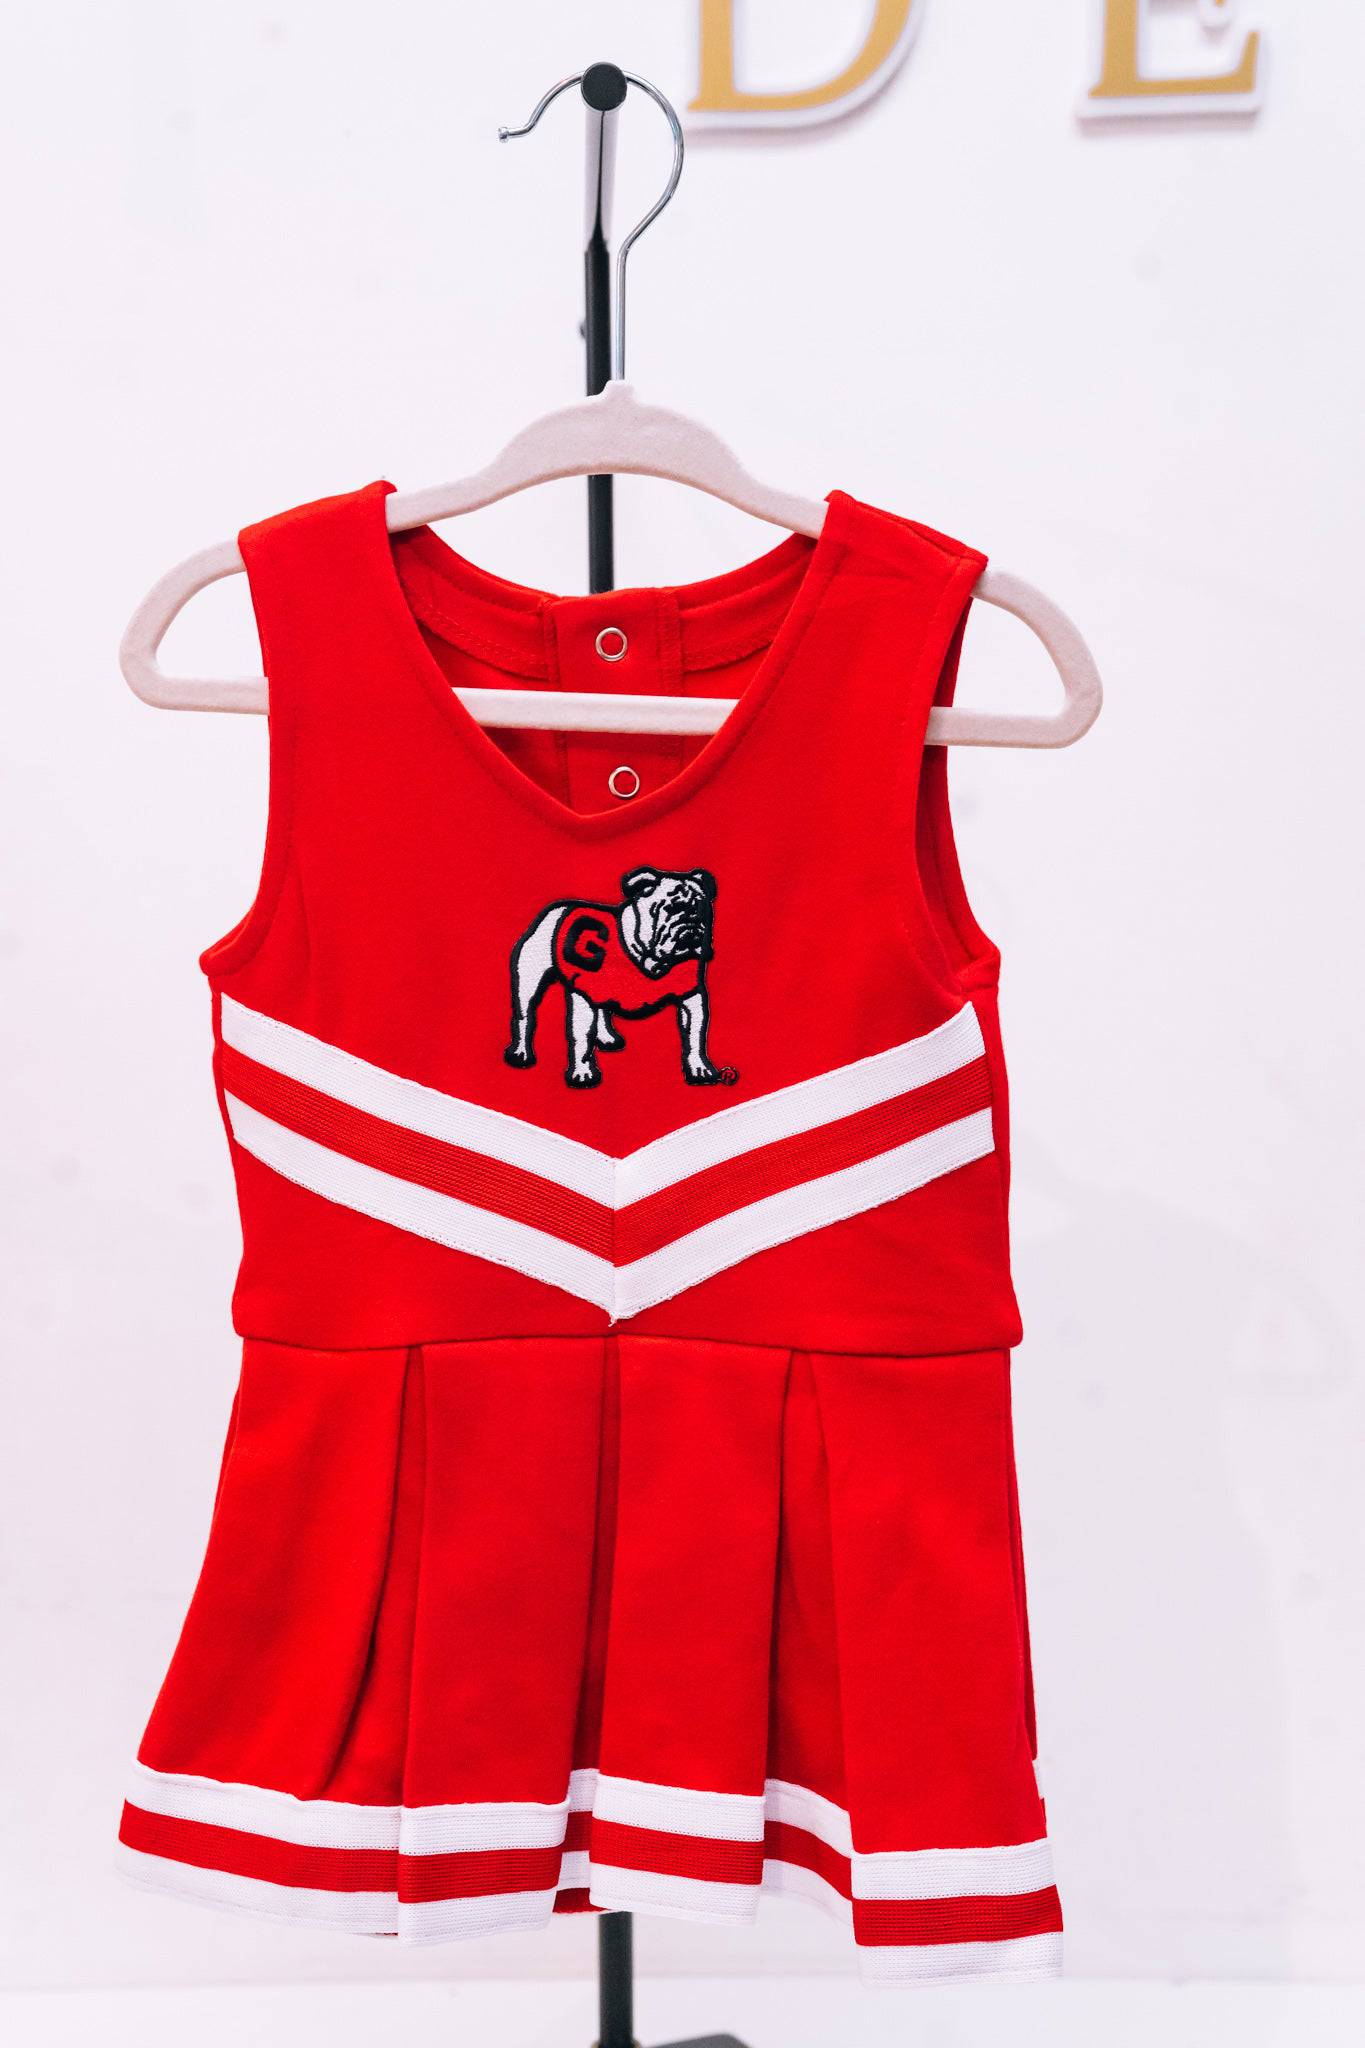 University of Georgia Cheerleader Bodysuit Dress - Findlay Rowe Designs